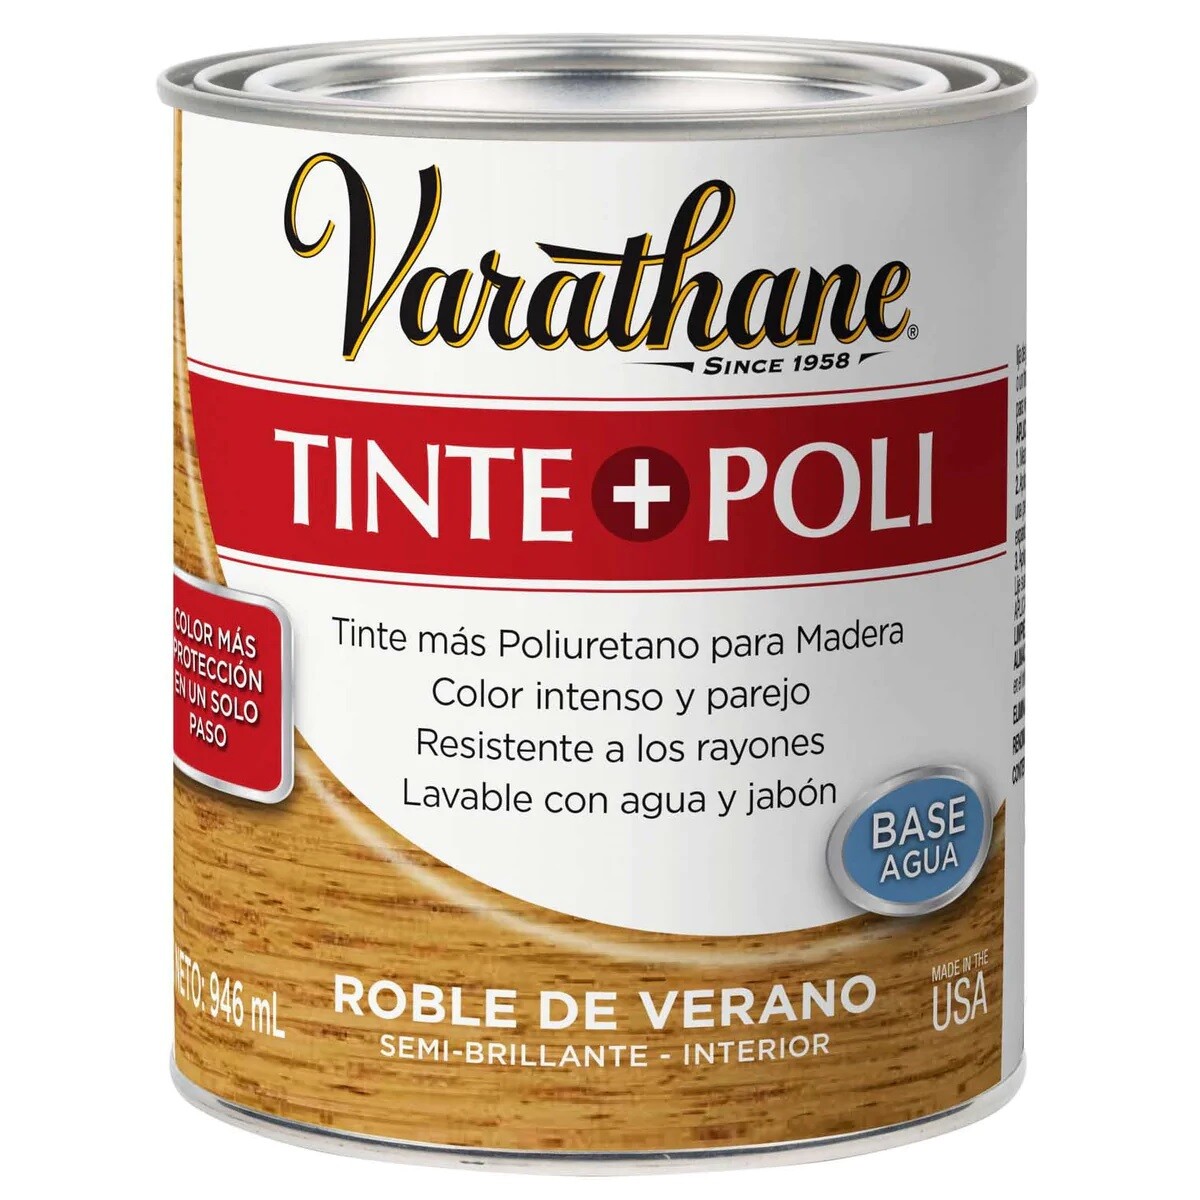 Tinta + Poliuretano - Roble de verano 0.946L Varathane 